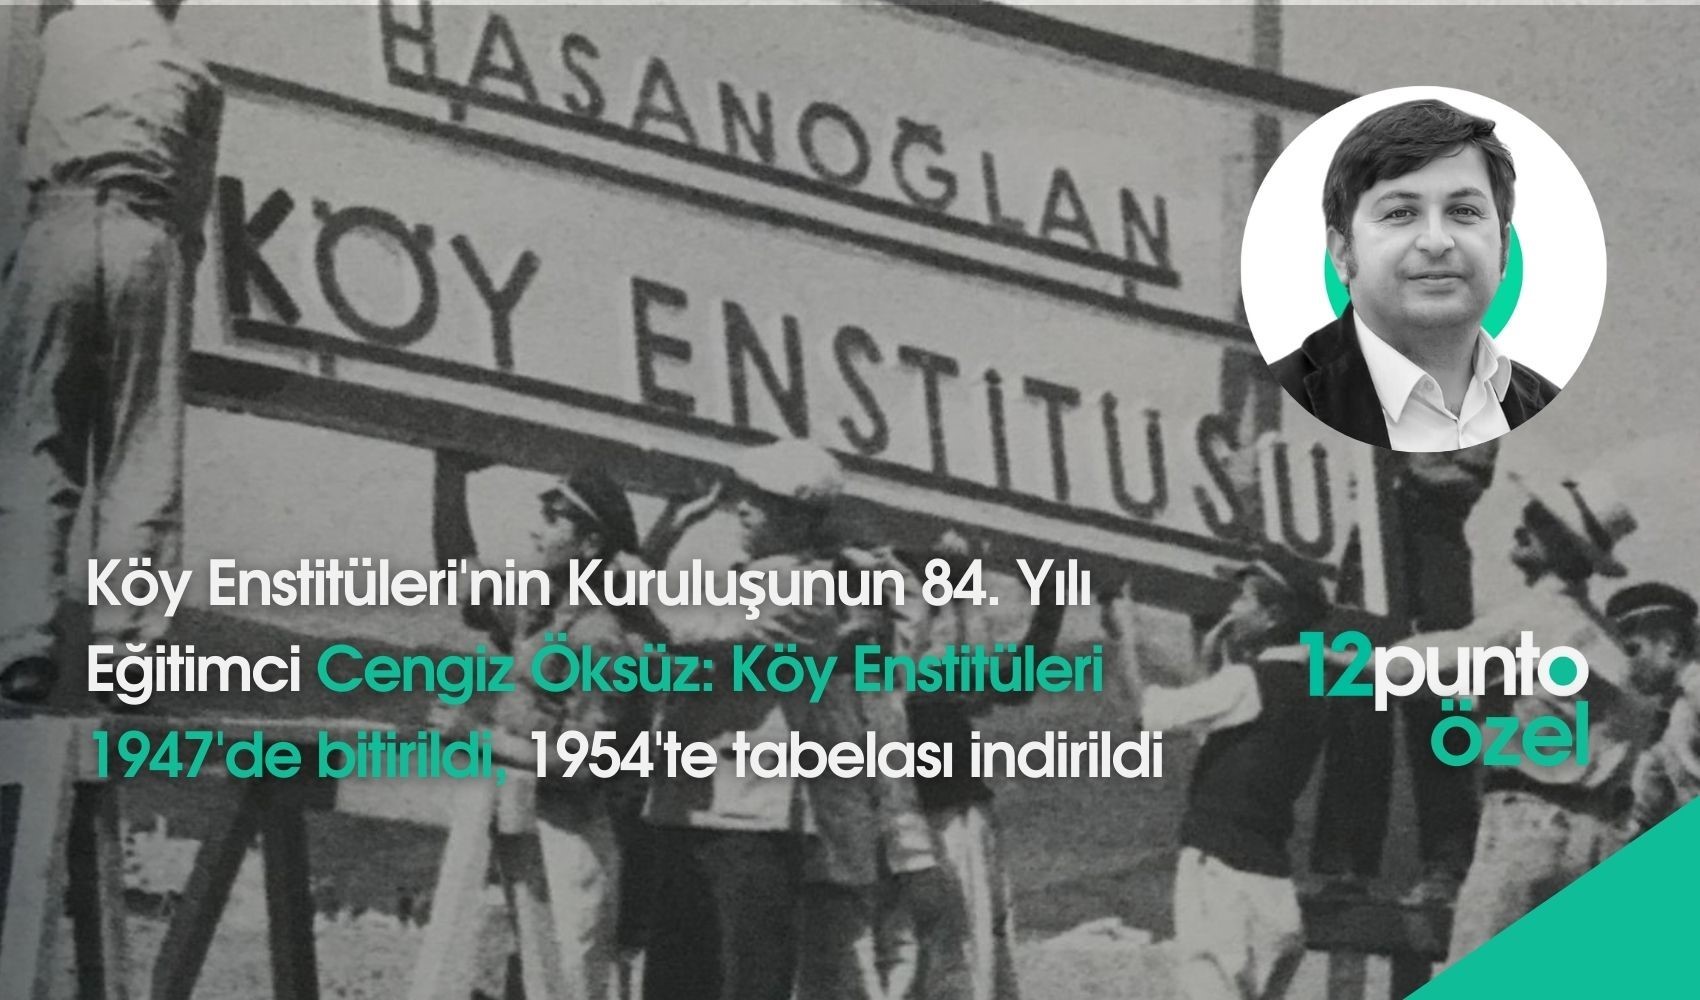 Kuruluşunun 84. yılında Köy Enstitüleri: '1947’de bitirildi, 1954’te tabelası indirildi'